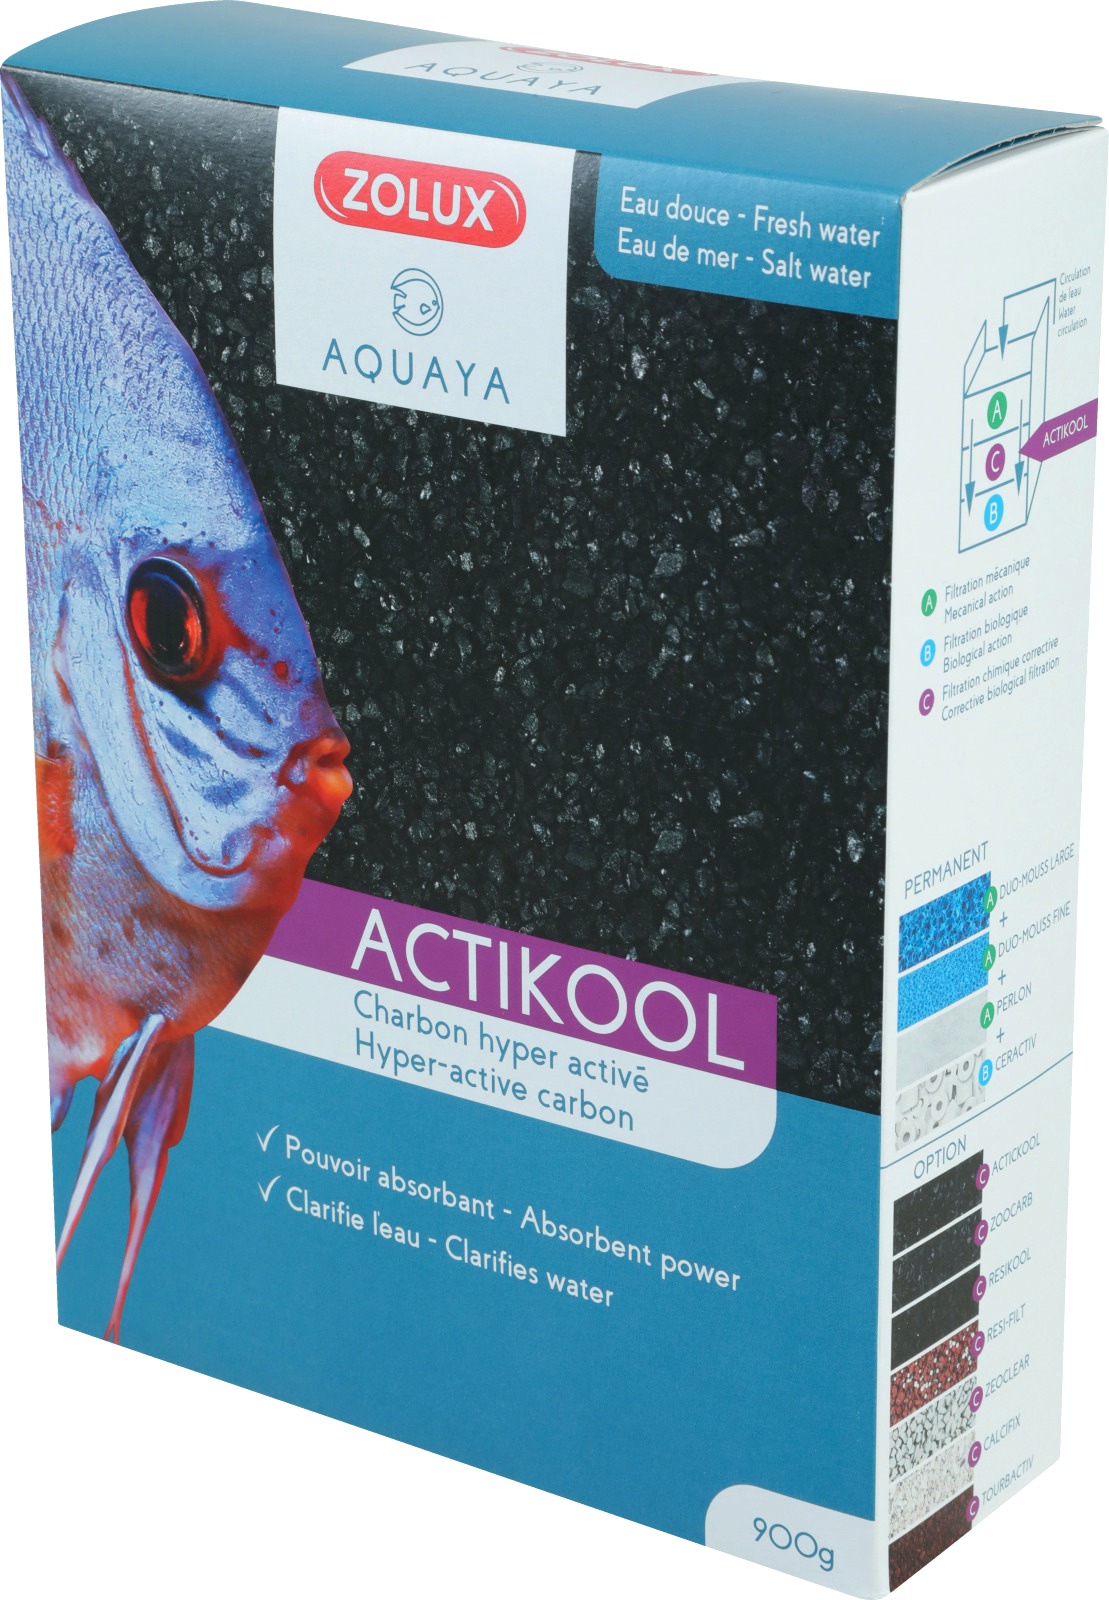 zolux-actikool-2-1-8l-charbon-super-actif-qui-clarifie-et-absorbe-les-toxines-en-aquarium-d-eau-douce-eau-de-mer